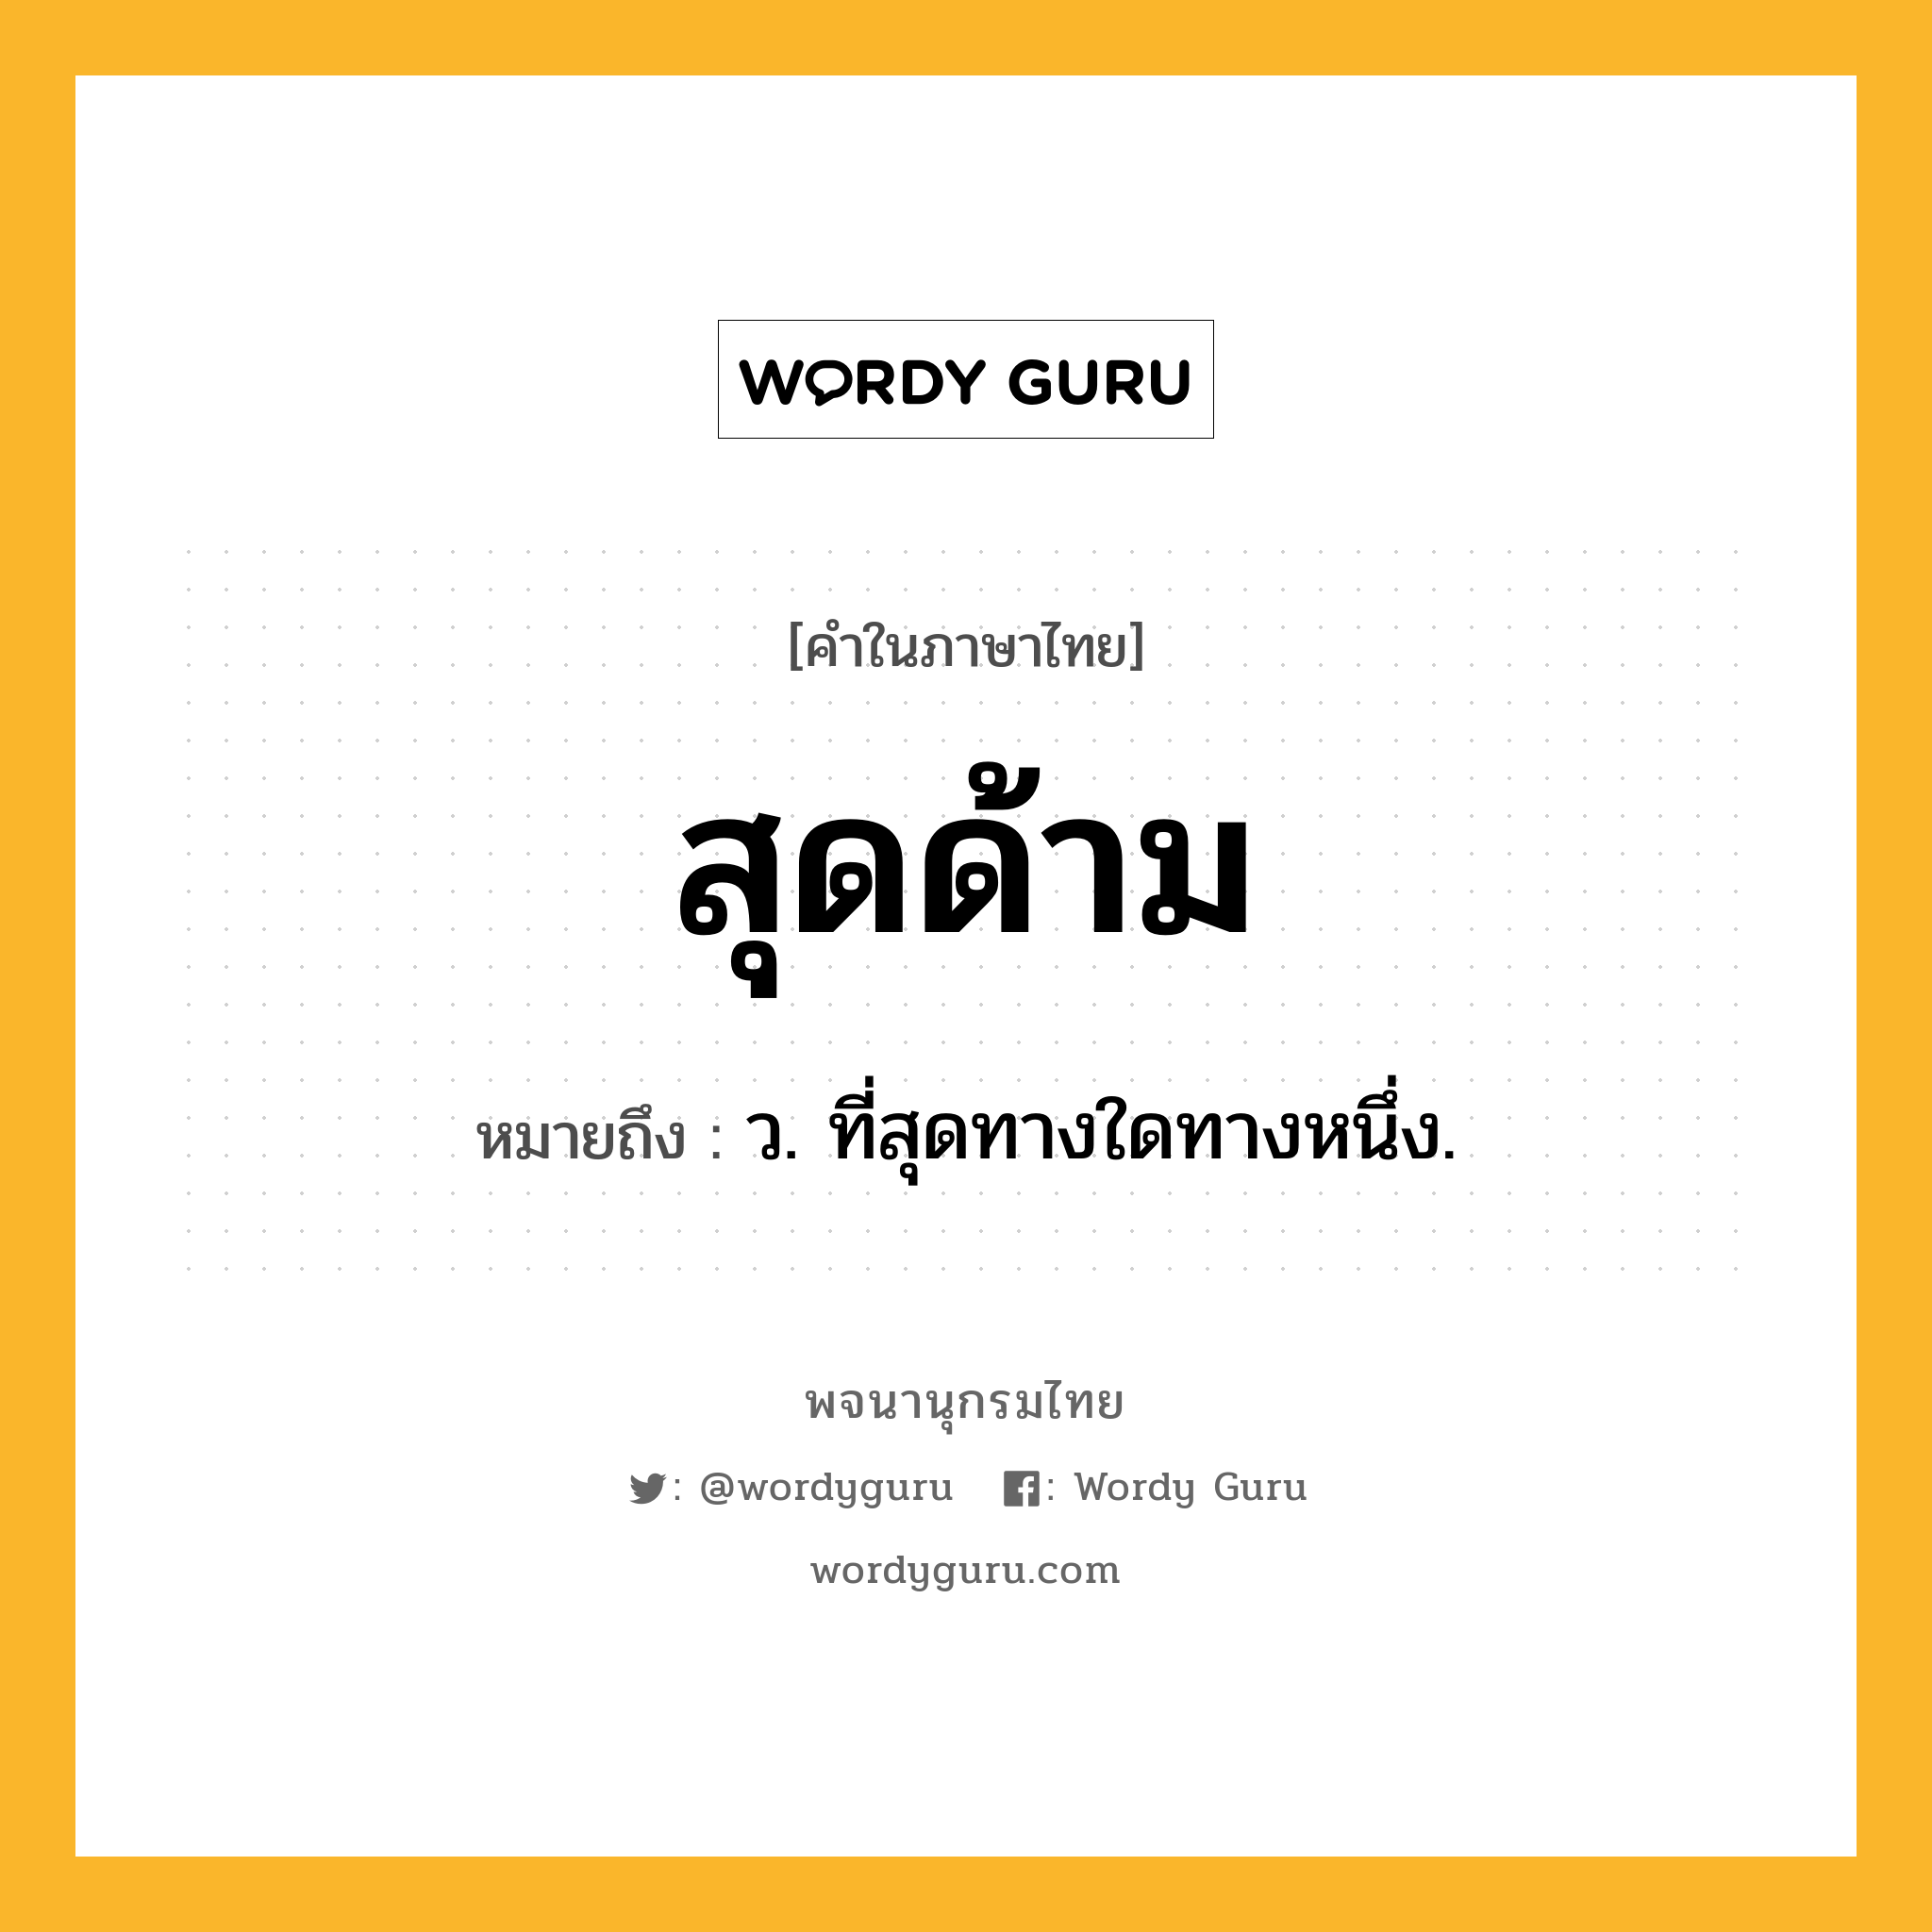 สุดด้าม หมายถึงอะไร?, คำในภาษาไทย สุดด้าม หมายถึง ว. ที่สุดทางใดทางหนึ่ง.